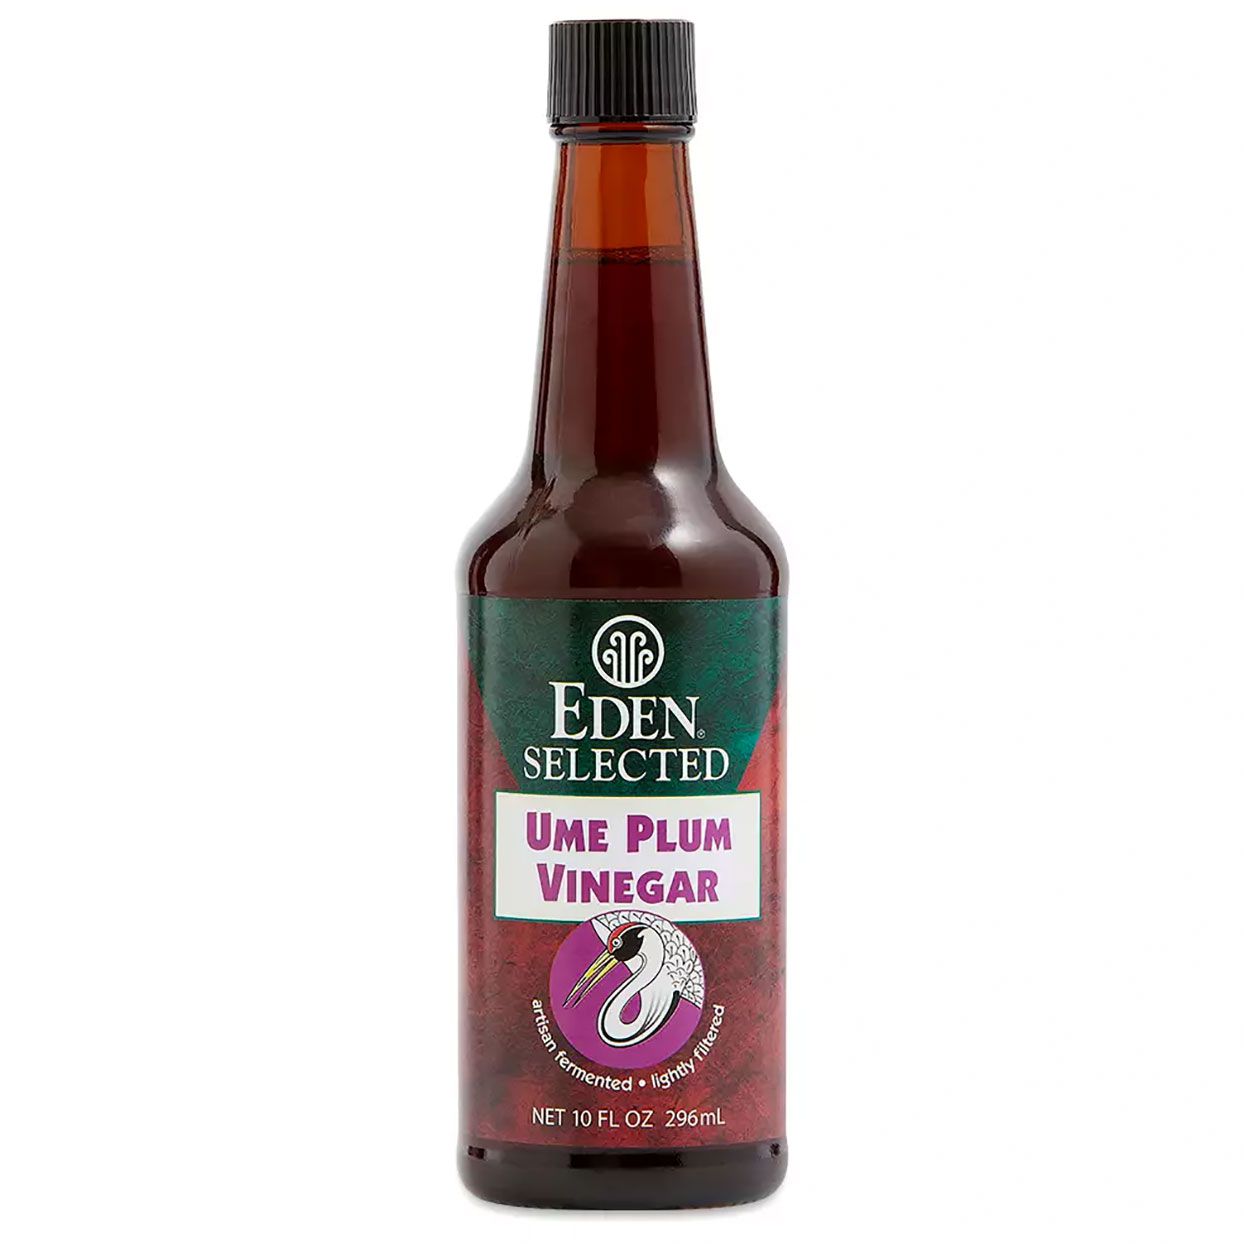 a bottle of Eden Foods Ume Plum Vinegar